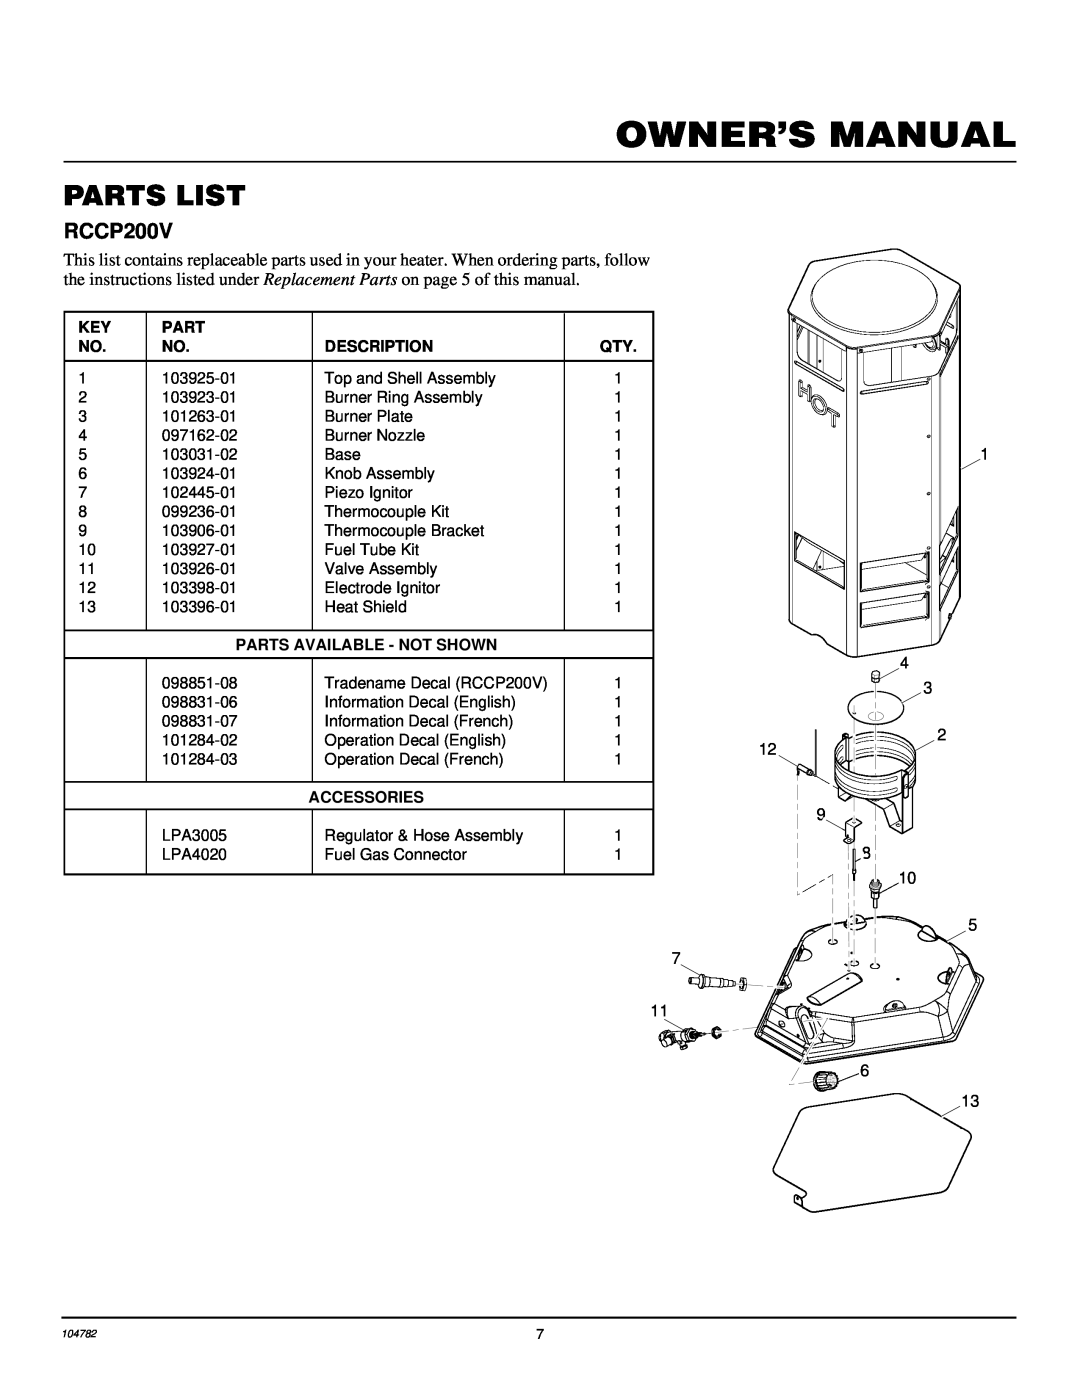 Desa RCCP200V owner manual Parts List, Description, Parts Available - Not Shown, Accessories 